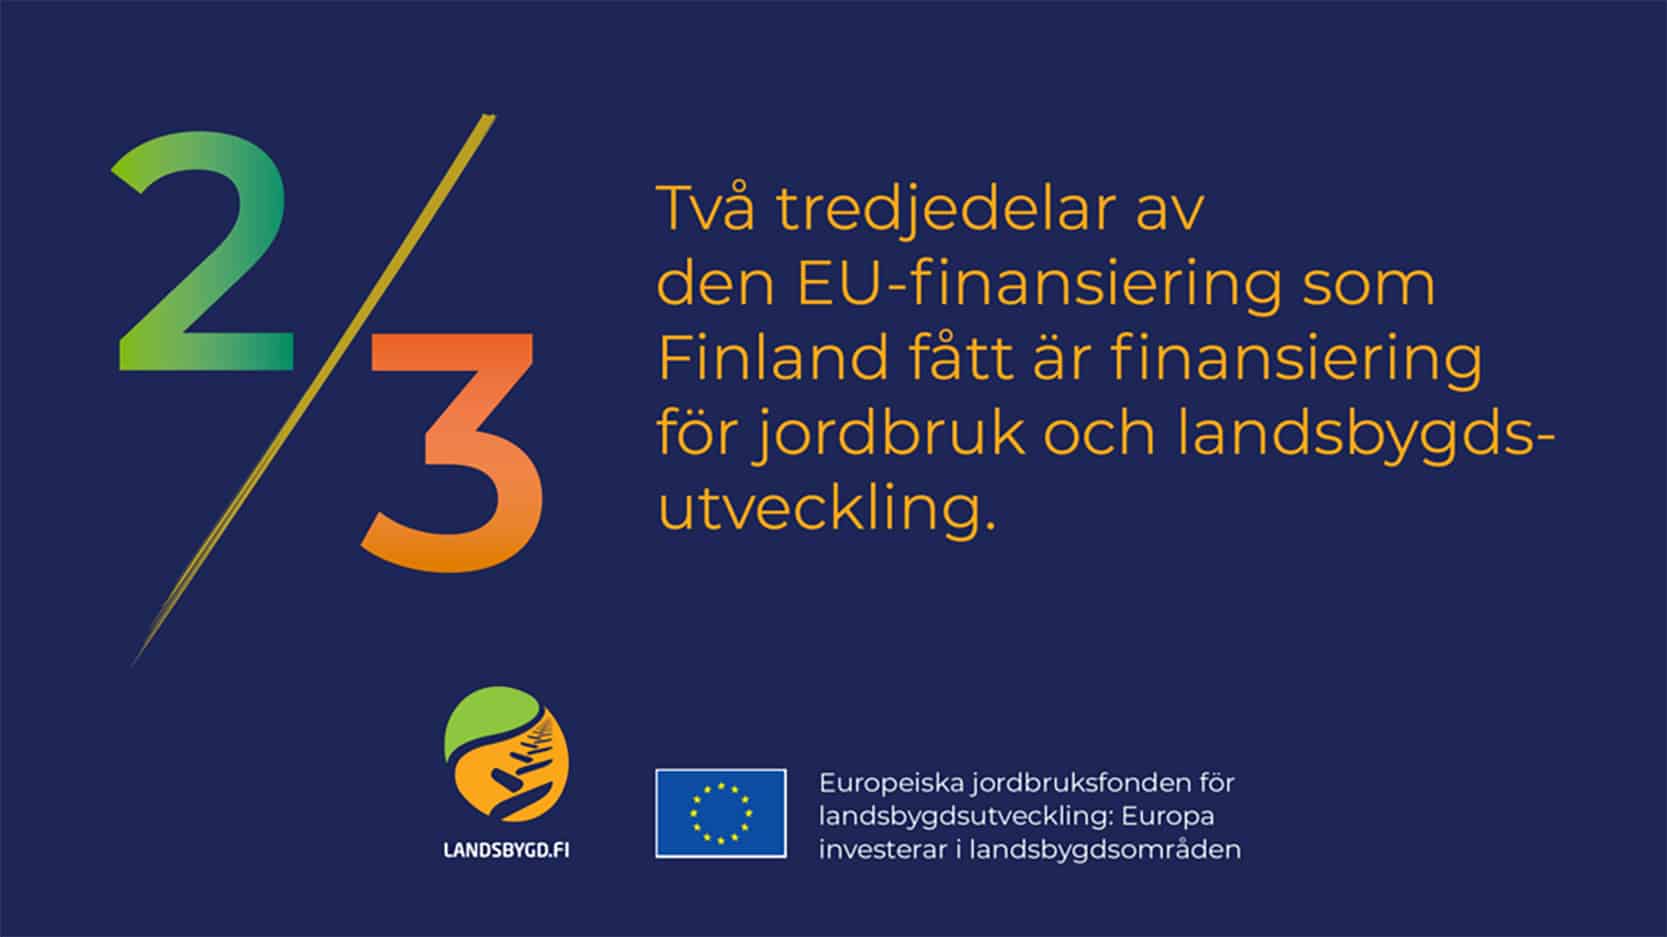 Landsbygdsfondens möjligheter i Egentliga Finland – Webbinariets inspelning och presentationer har publicerats